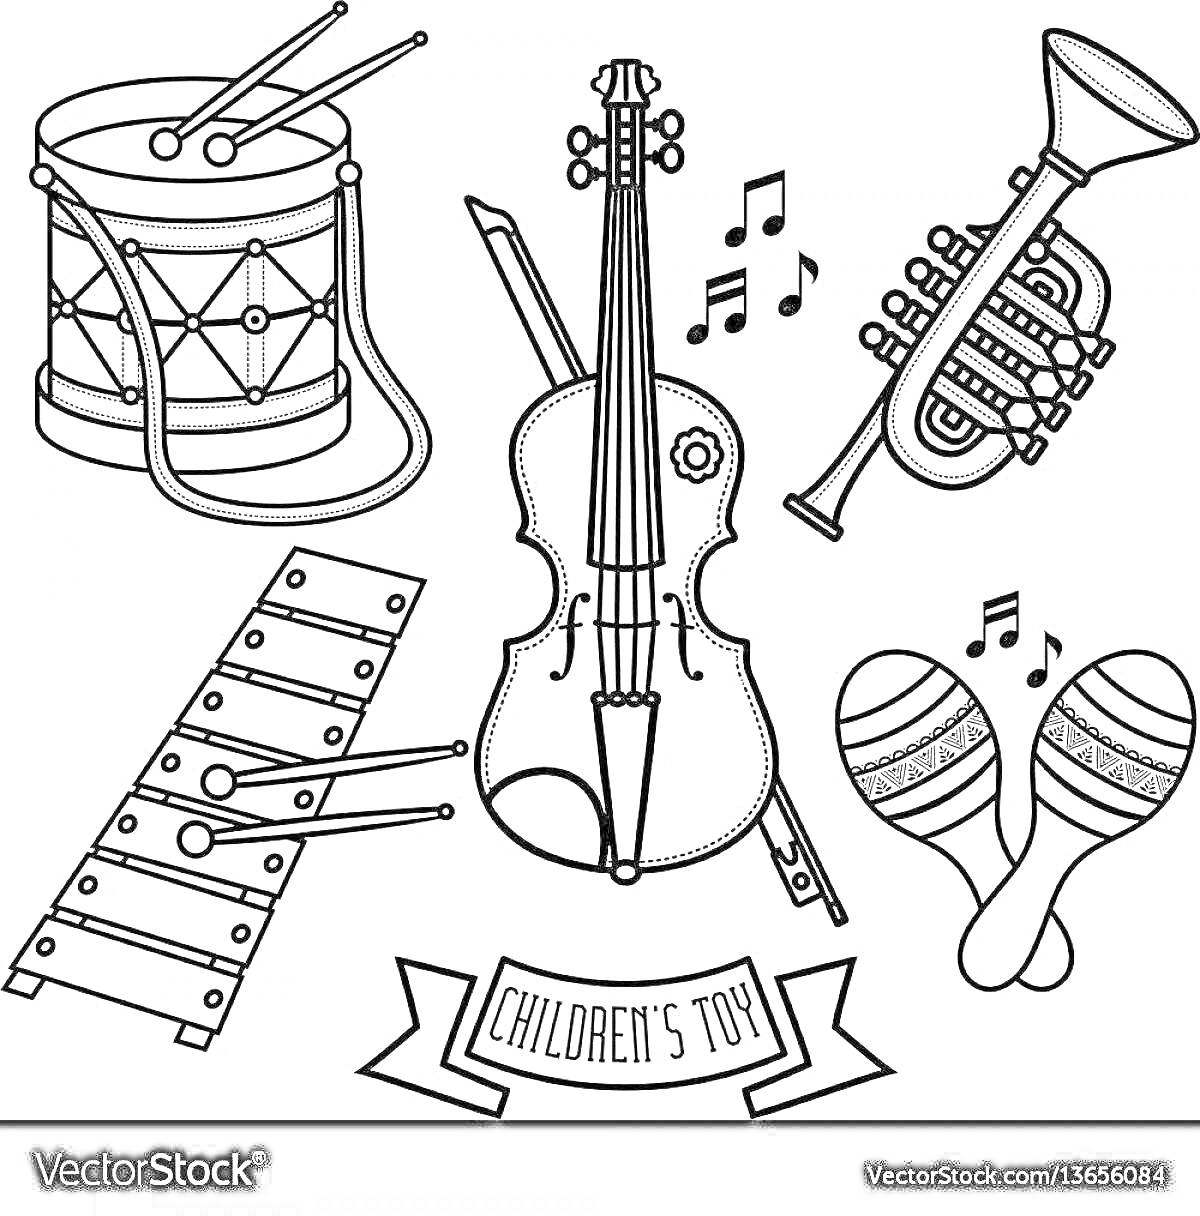 Детские игрушечные музыкальные инструменты: барабан с палочками, скрипка с смычком, труба, ксилофон, маракасы